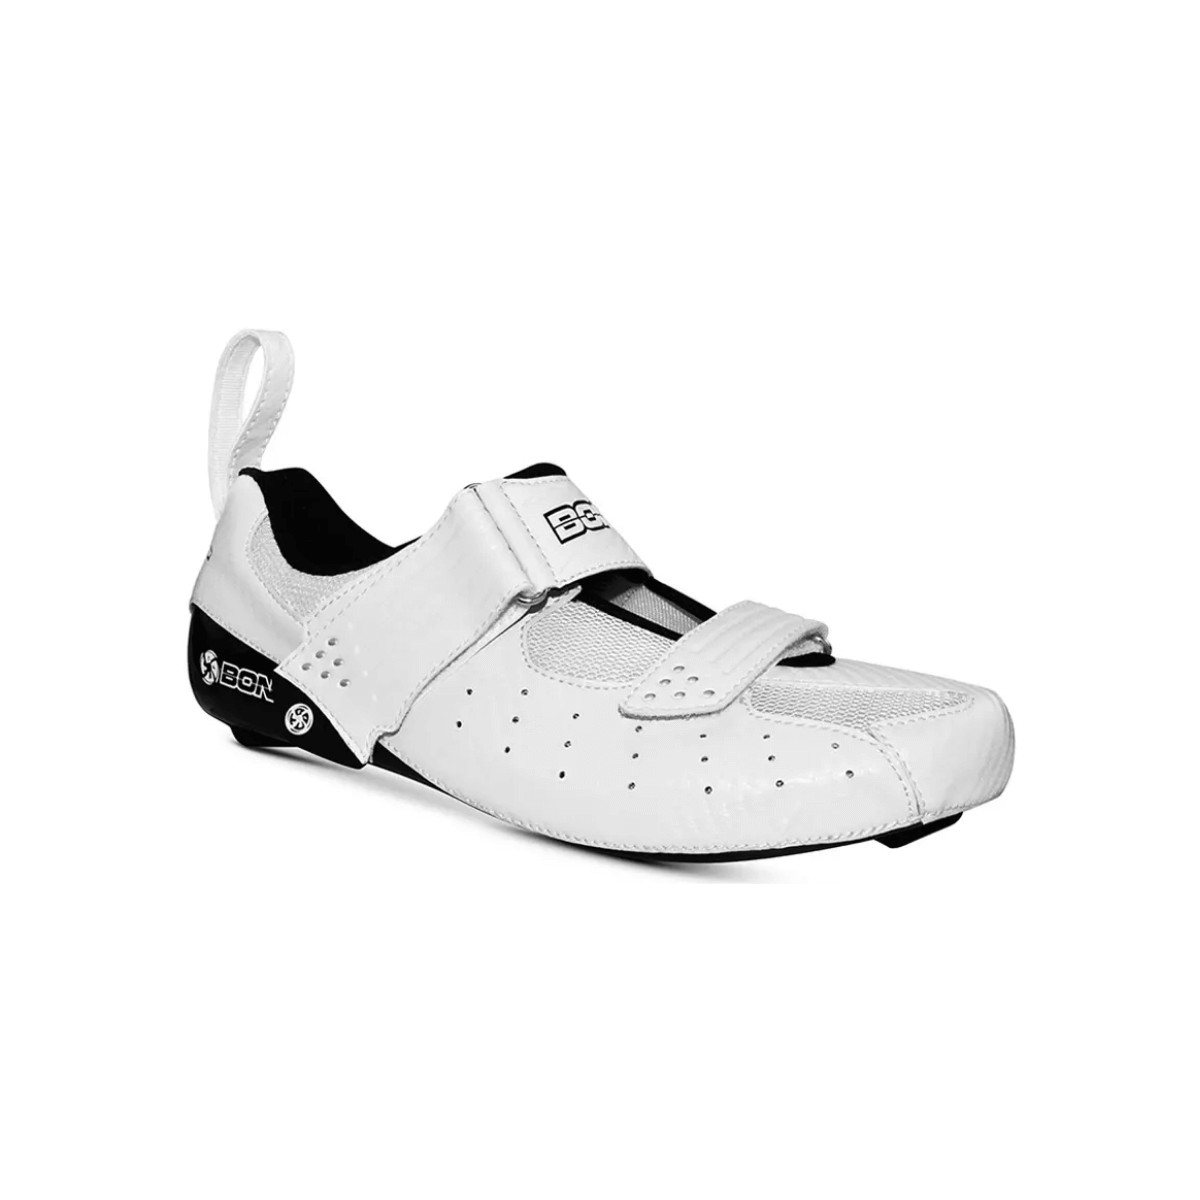 Bont Riot TR Triathlon Shoes White Black, Size 38 - EUR